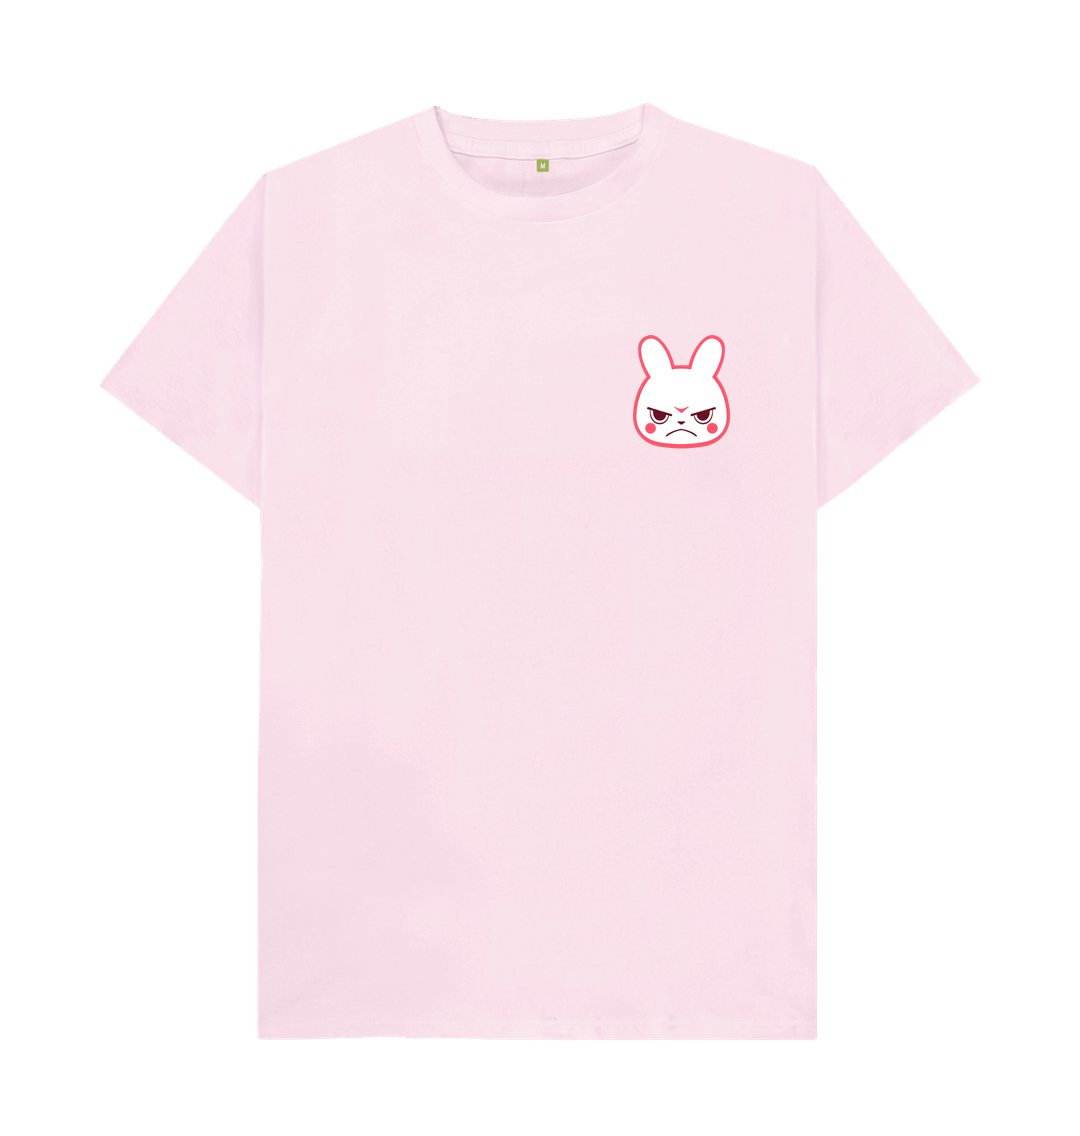 Pink Bunny kanji tee